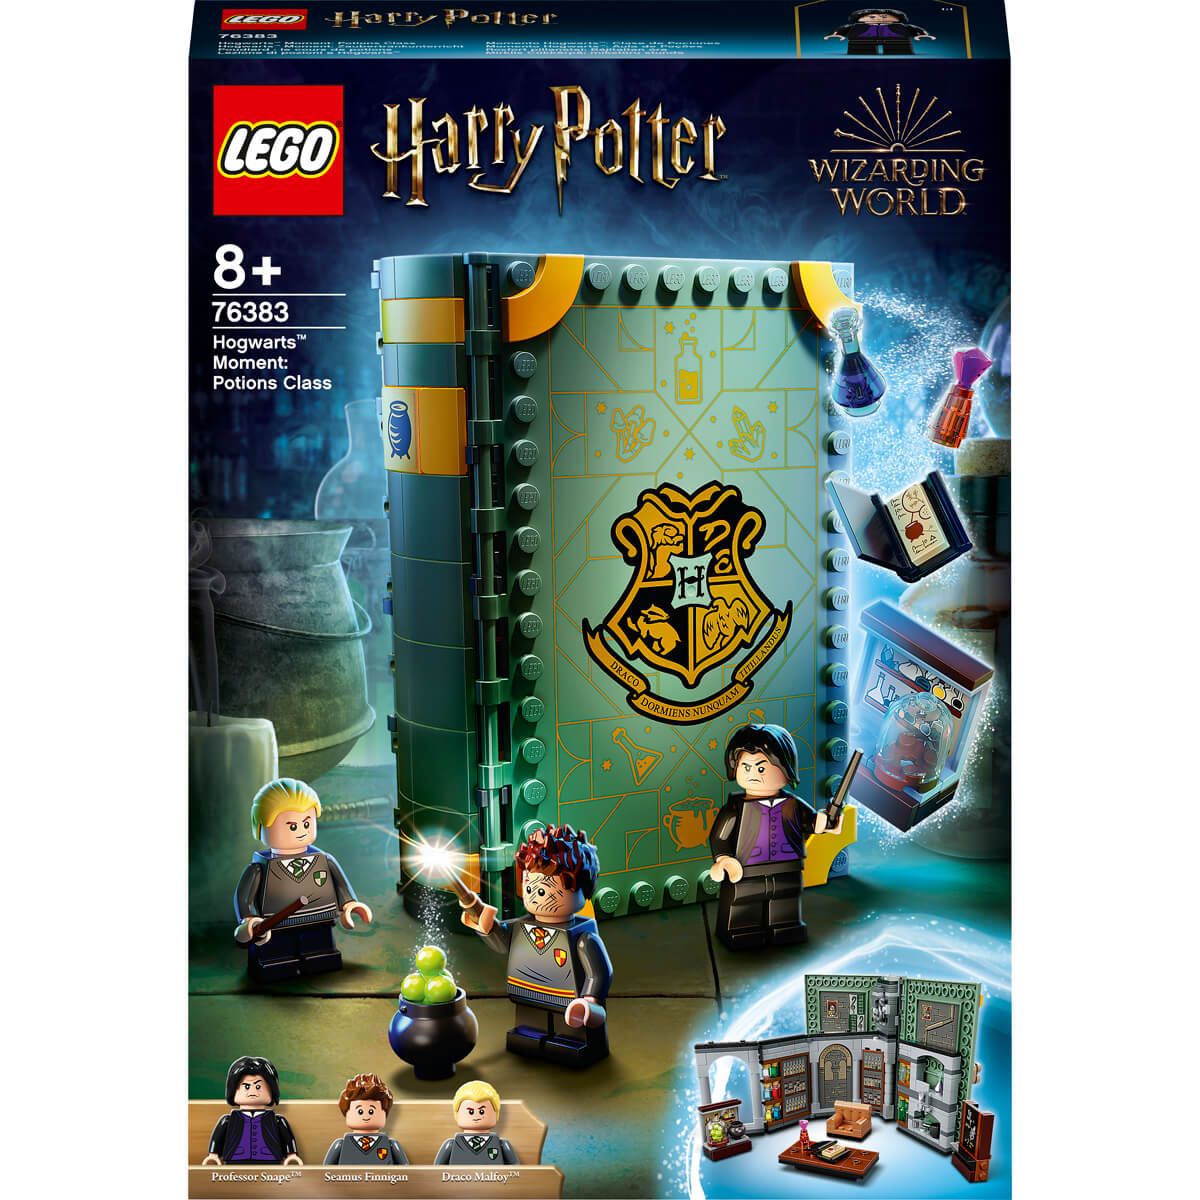 ΠΑΙΔΙ | Παιχνίδια | LEGO | HARRY POTER TM 76383 Hogwarts™ Moment: Potions Class